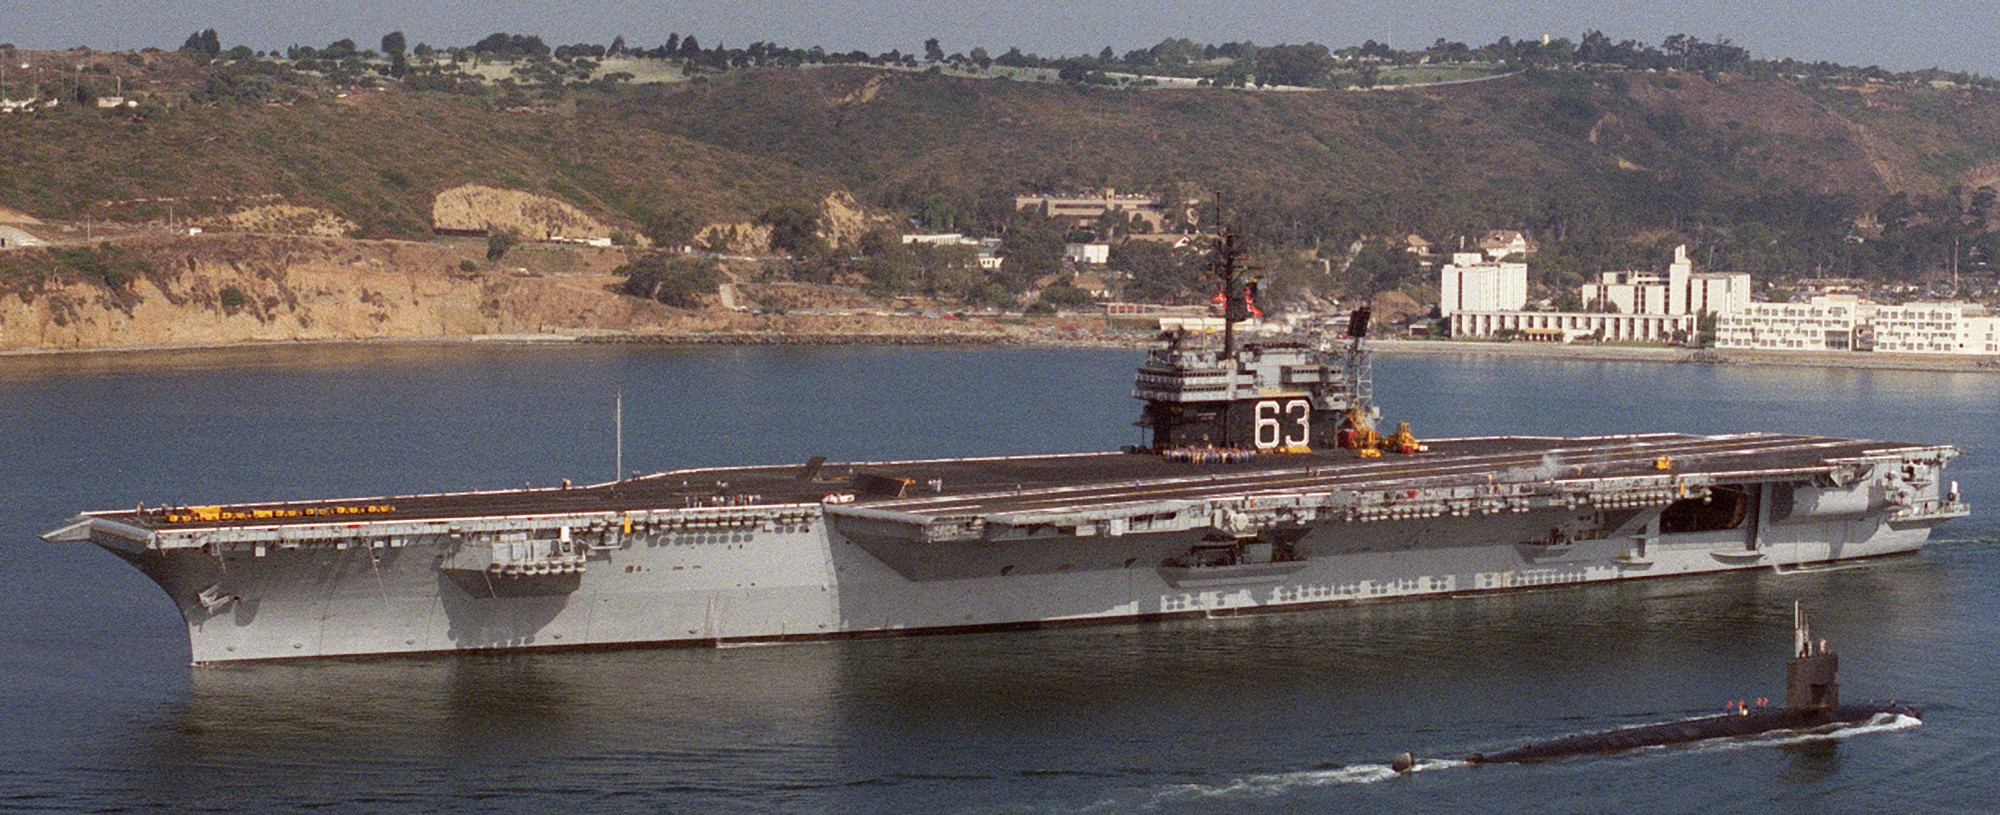 cv-63 uss kitty hawk aircraft carrier 452